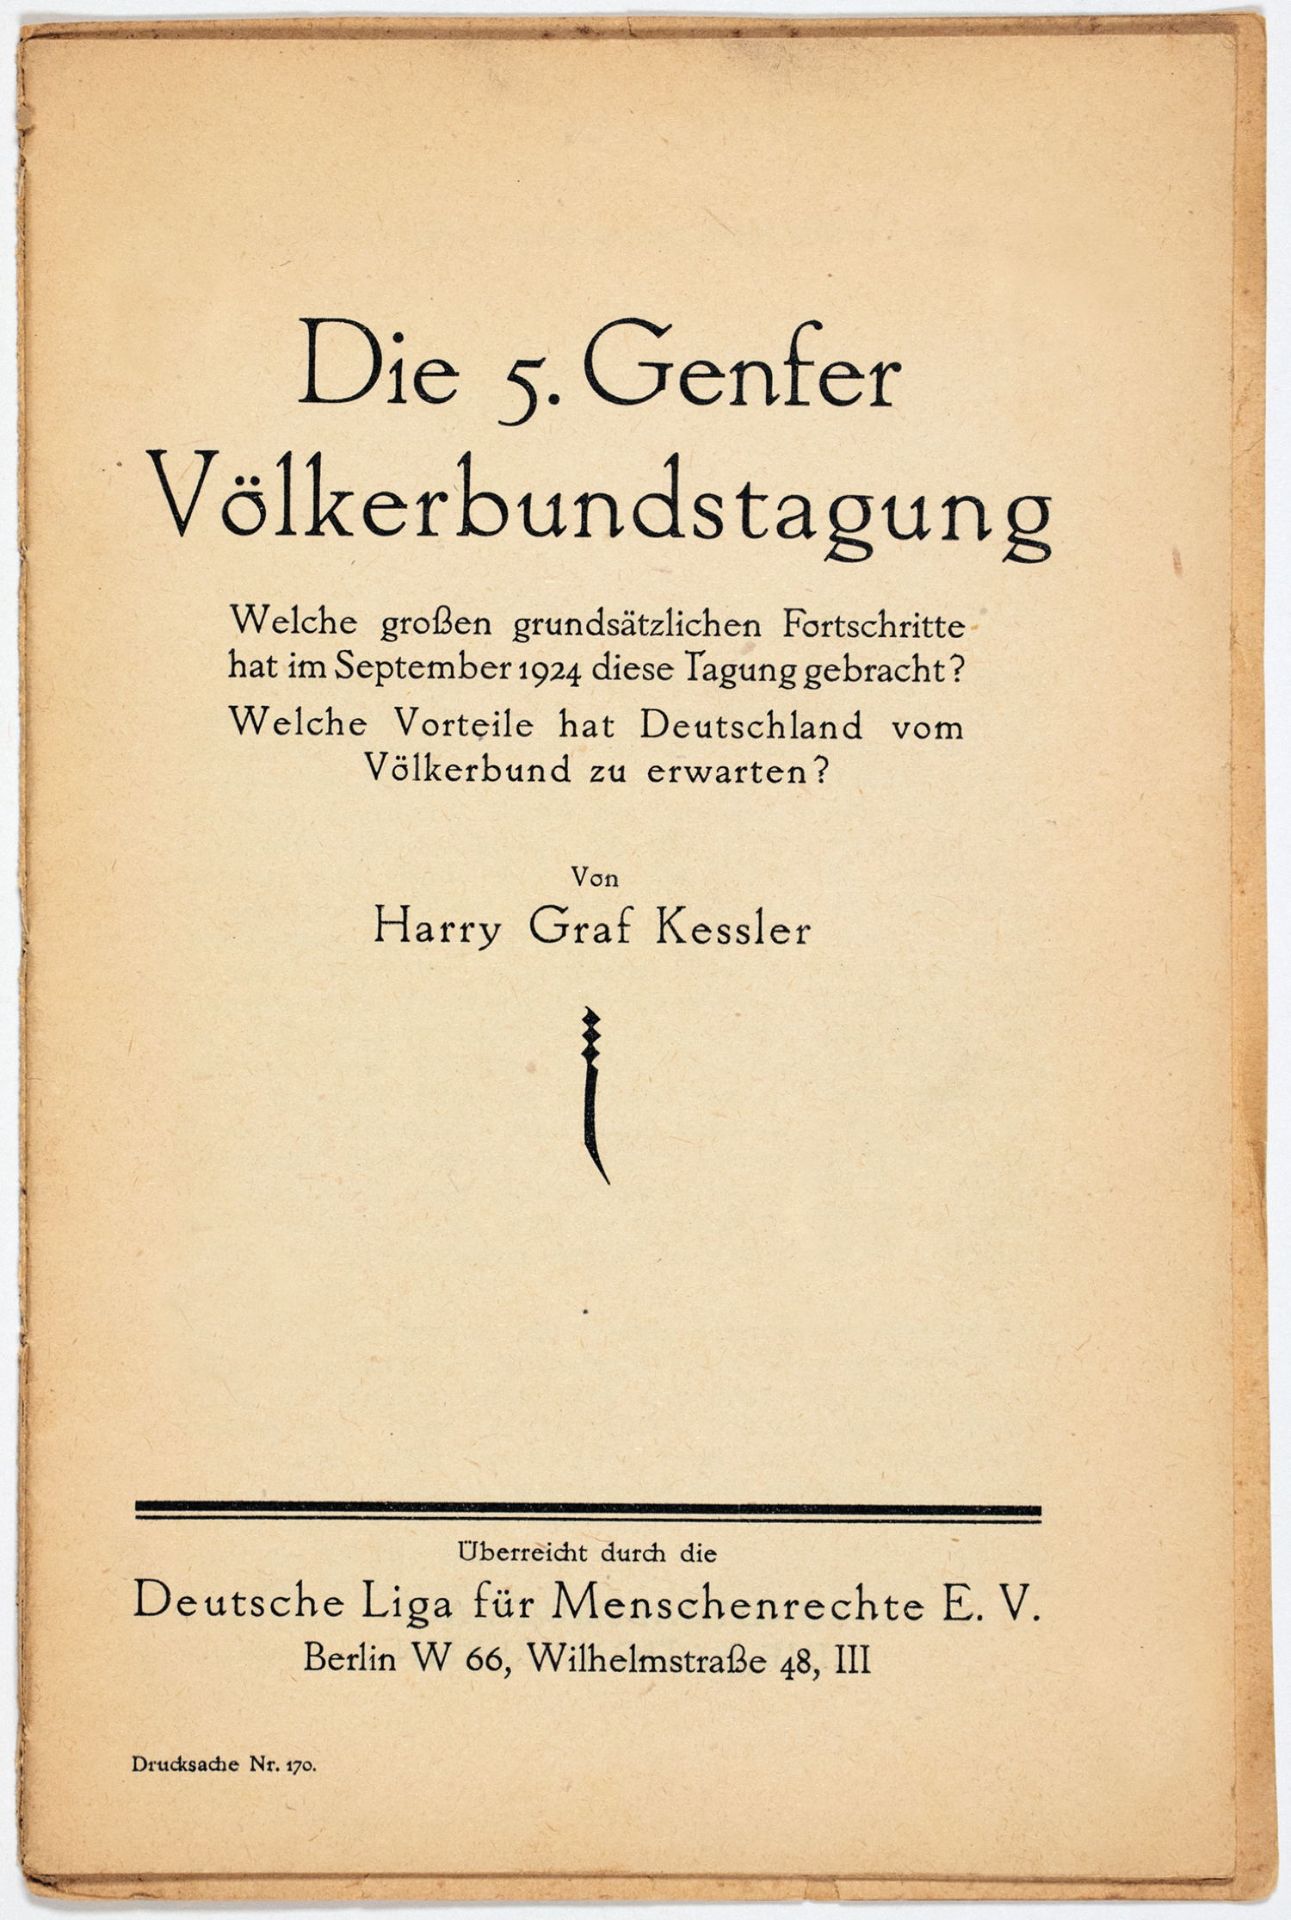 Harry Graf Kessler. Die 5. Genfer Völkerbundstagung.